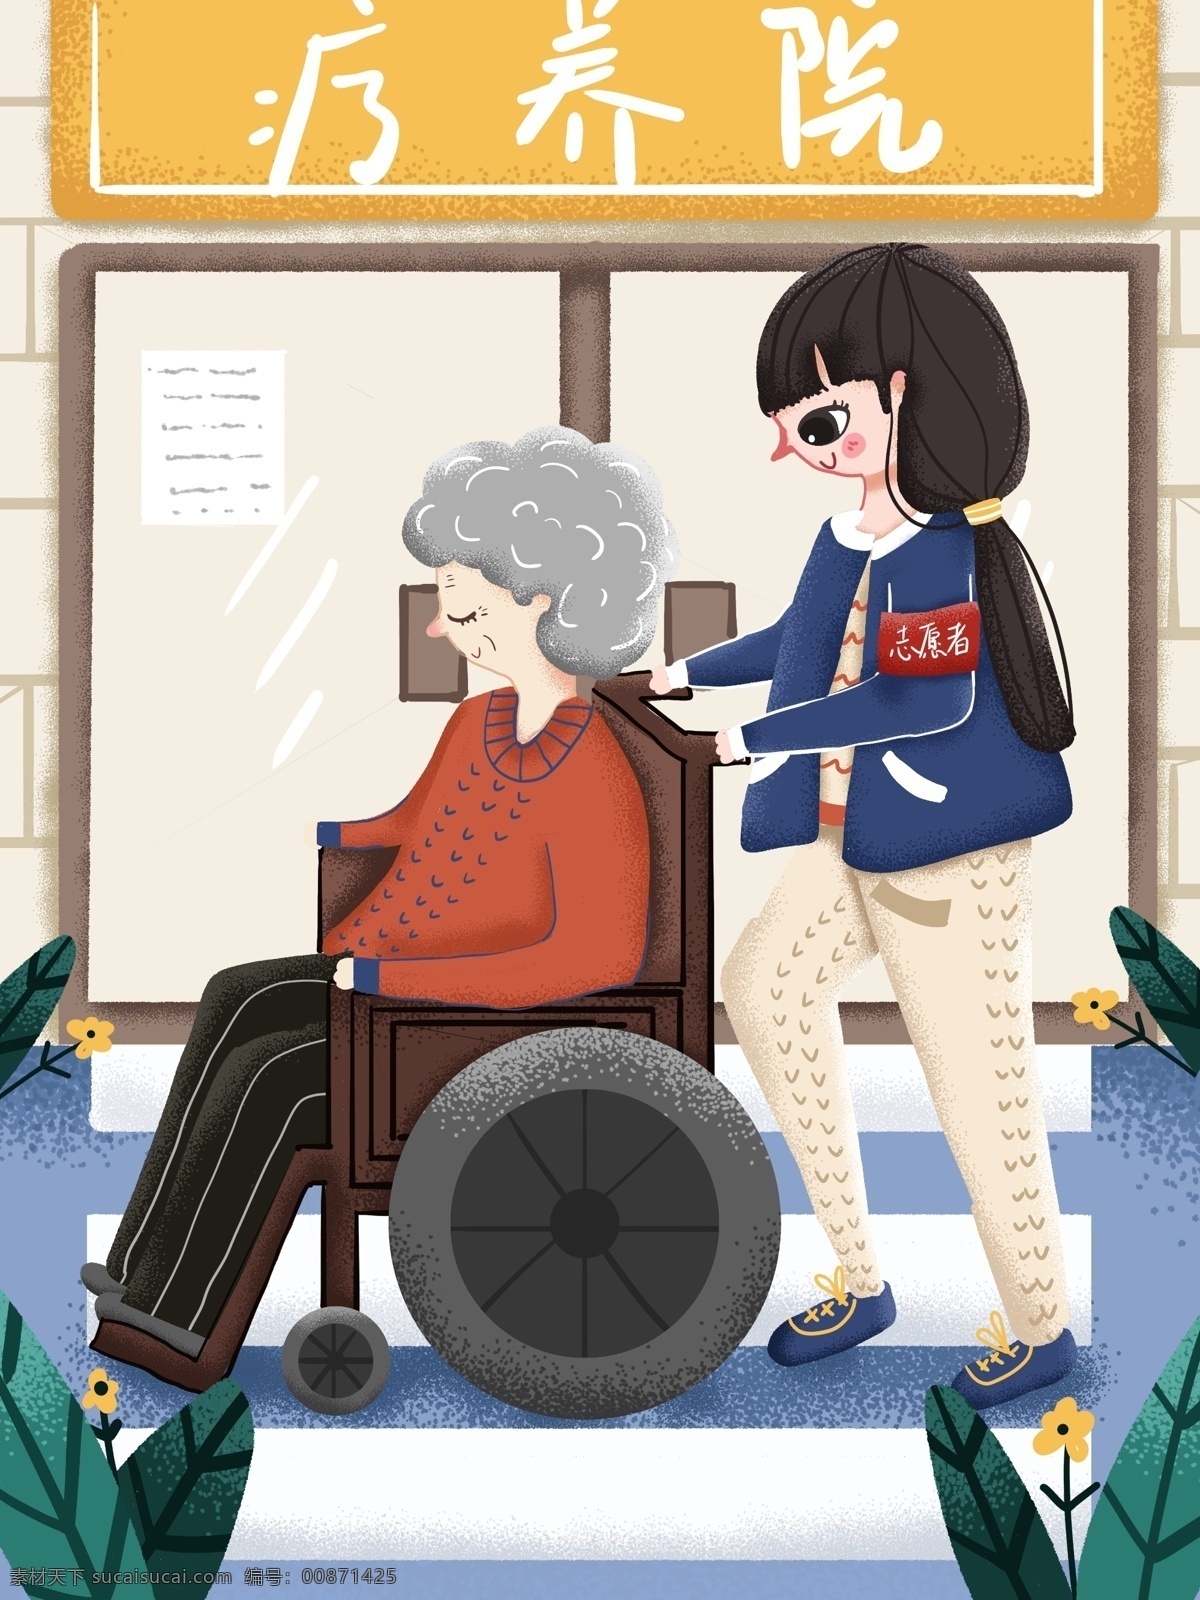 国际 志愿者 日志 愿者 推 疗养院 老人 散步 女孩 轮椅 国际志愿者日